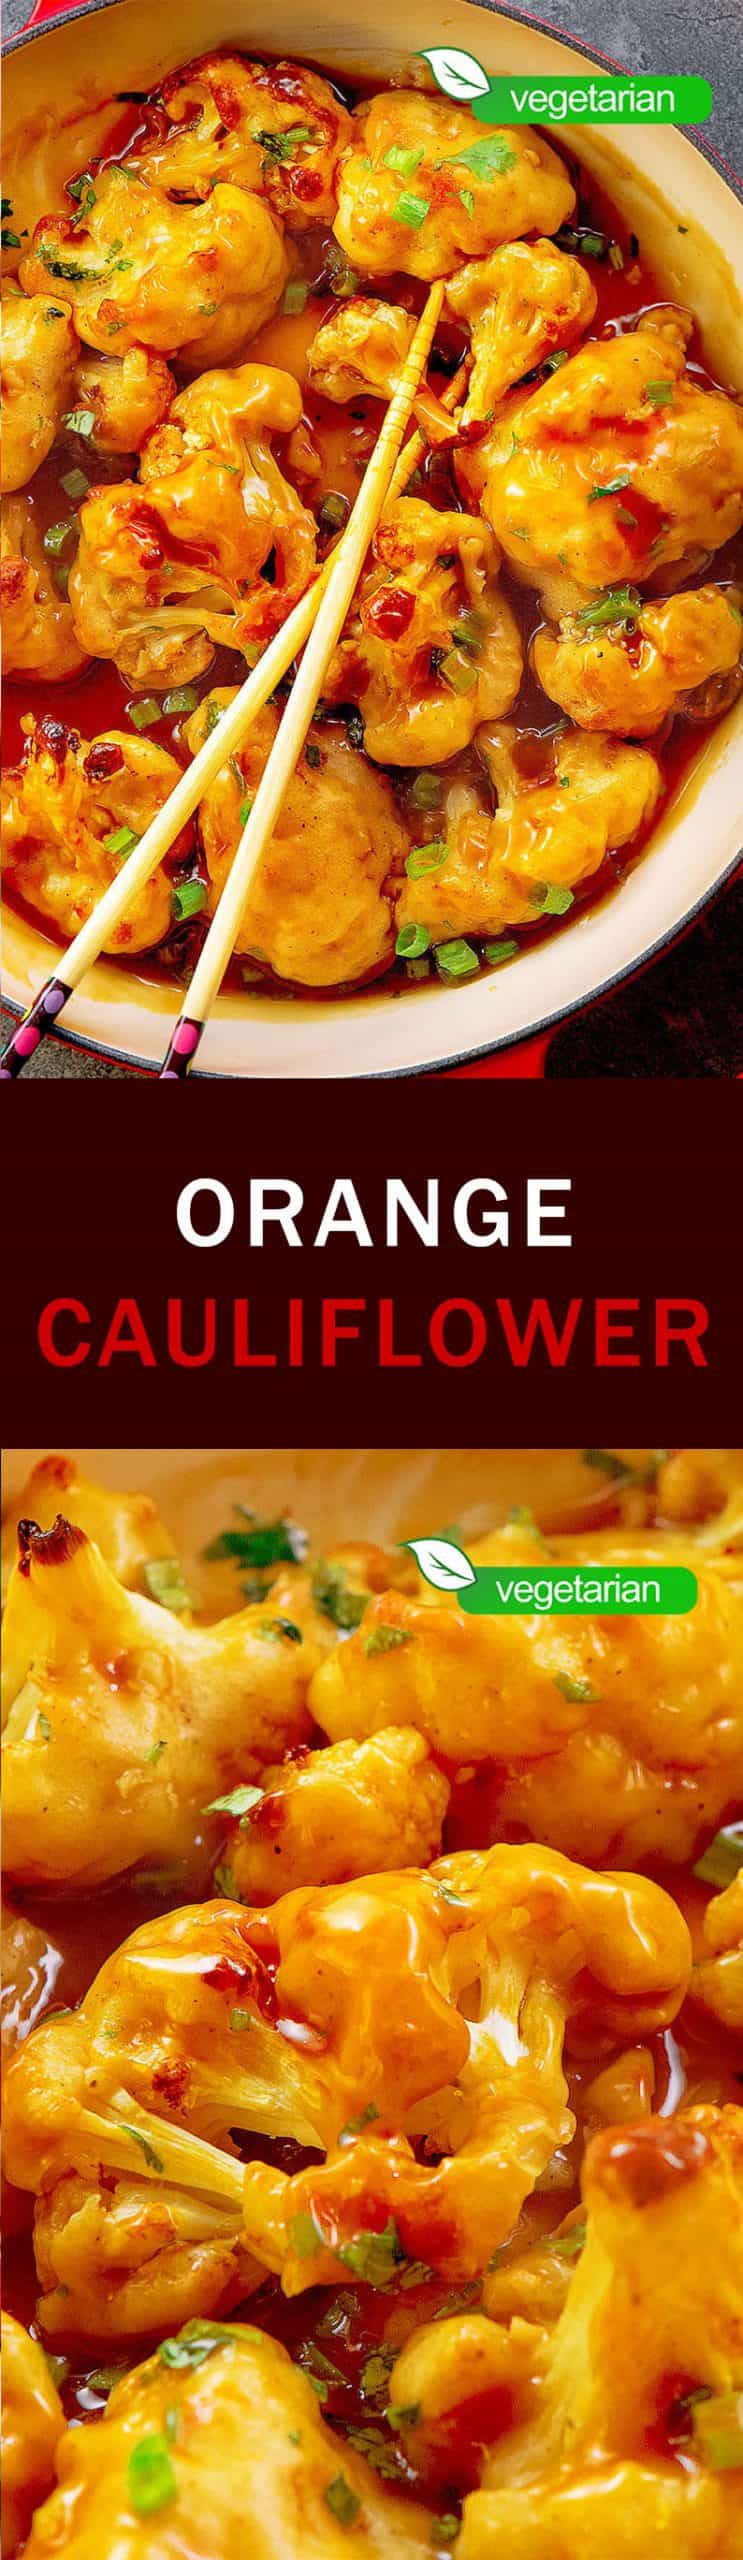 orange-cauliflower